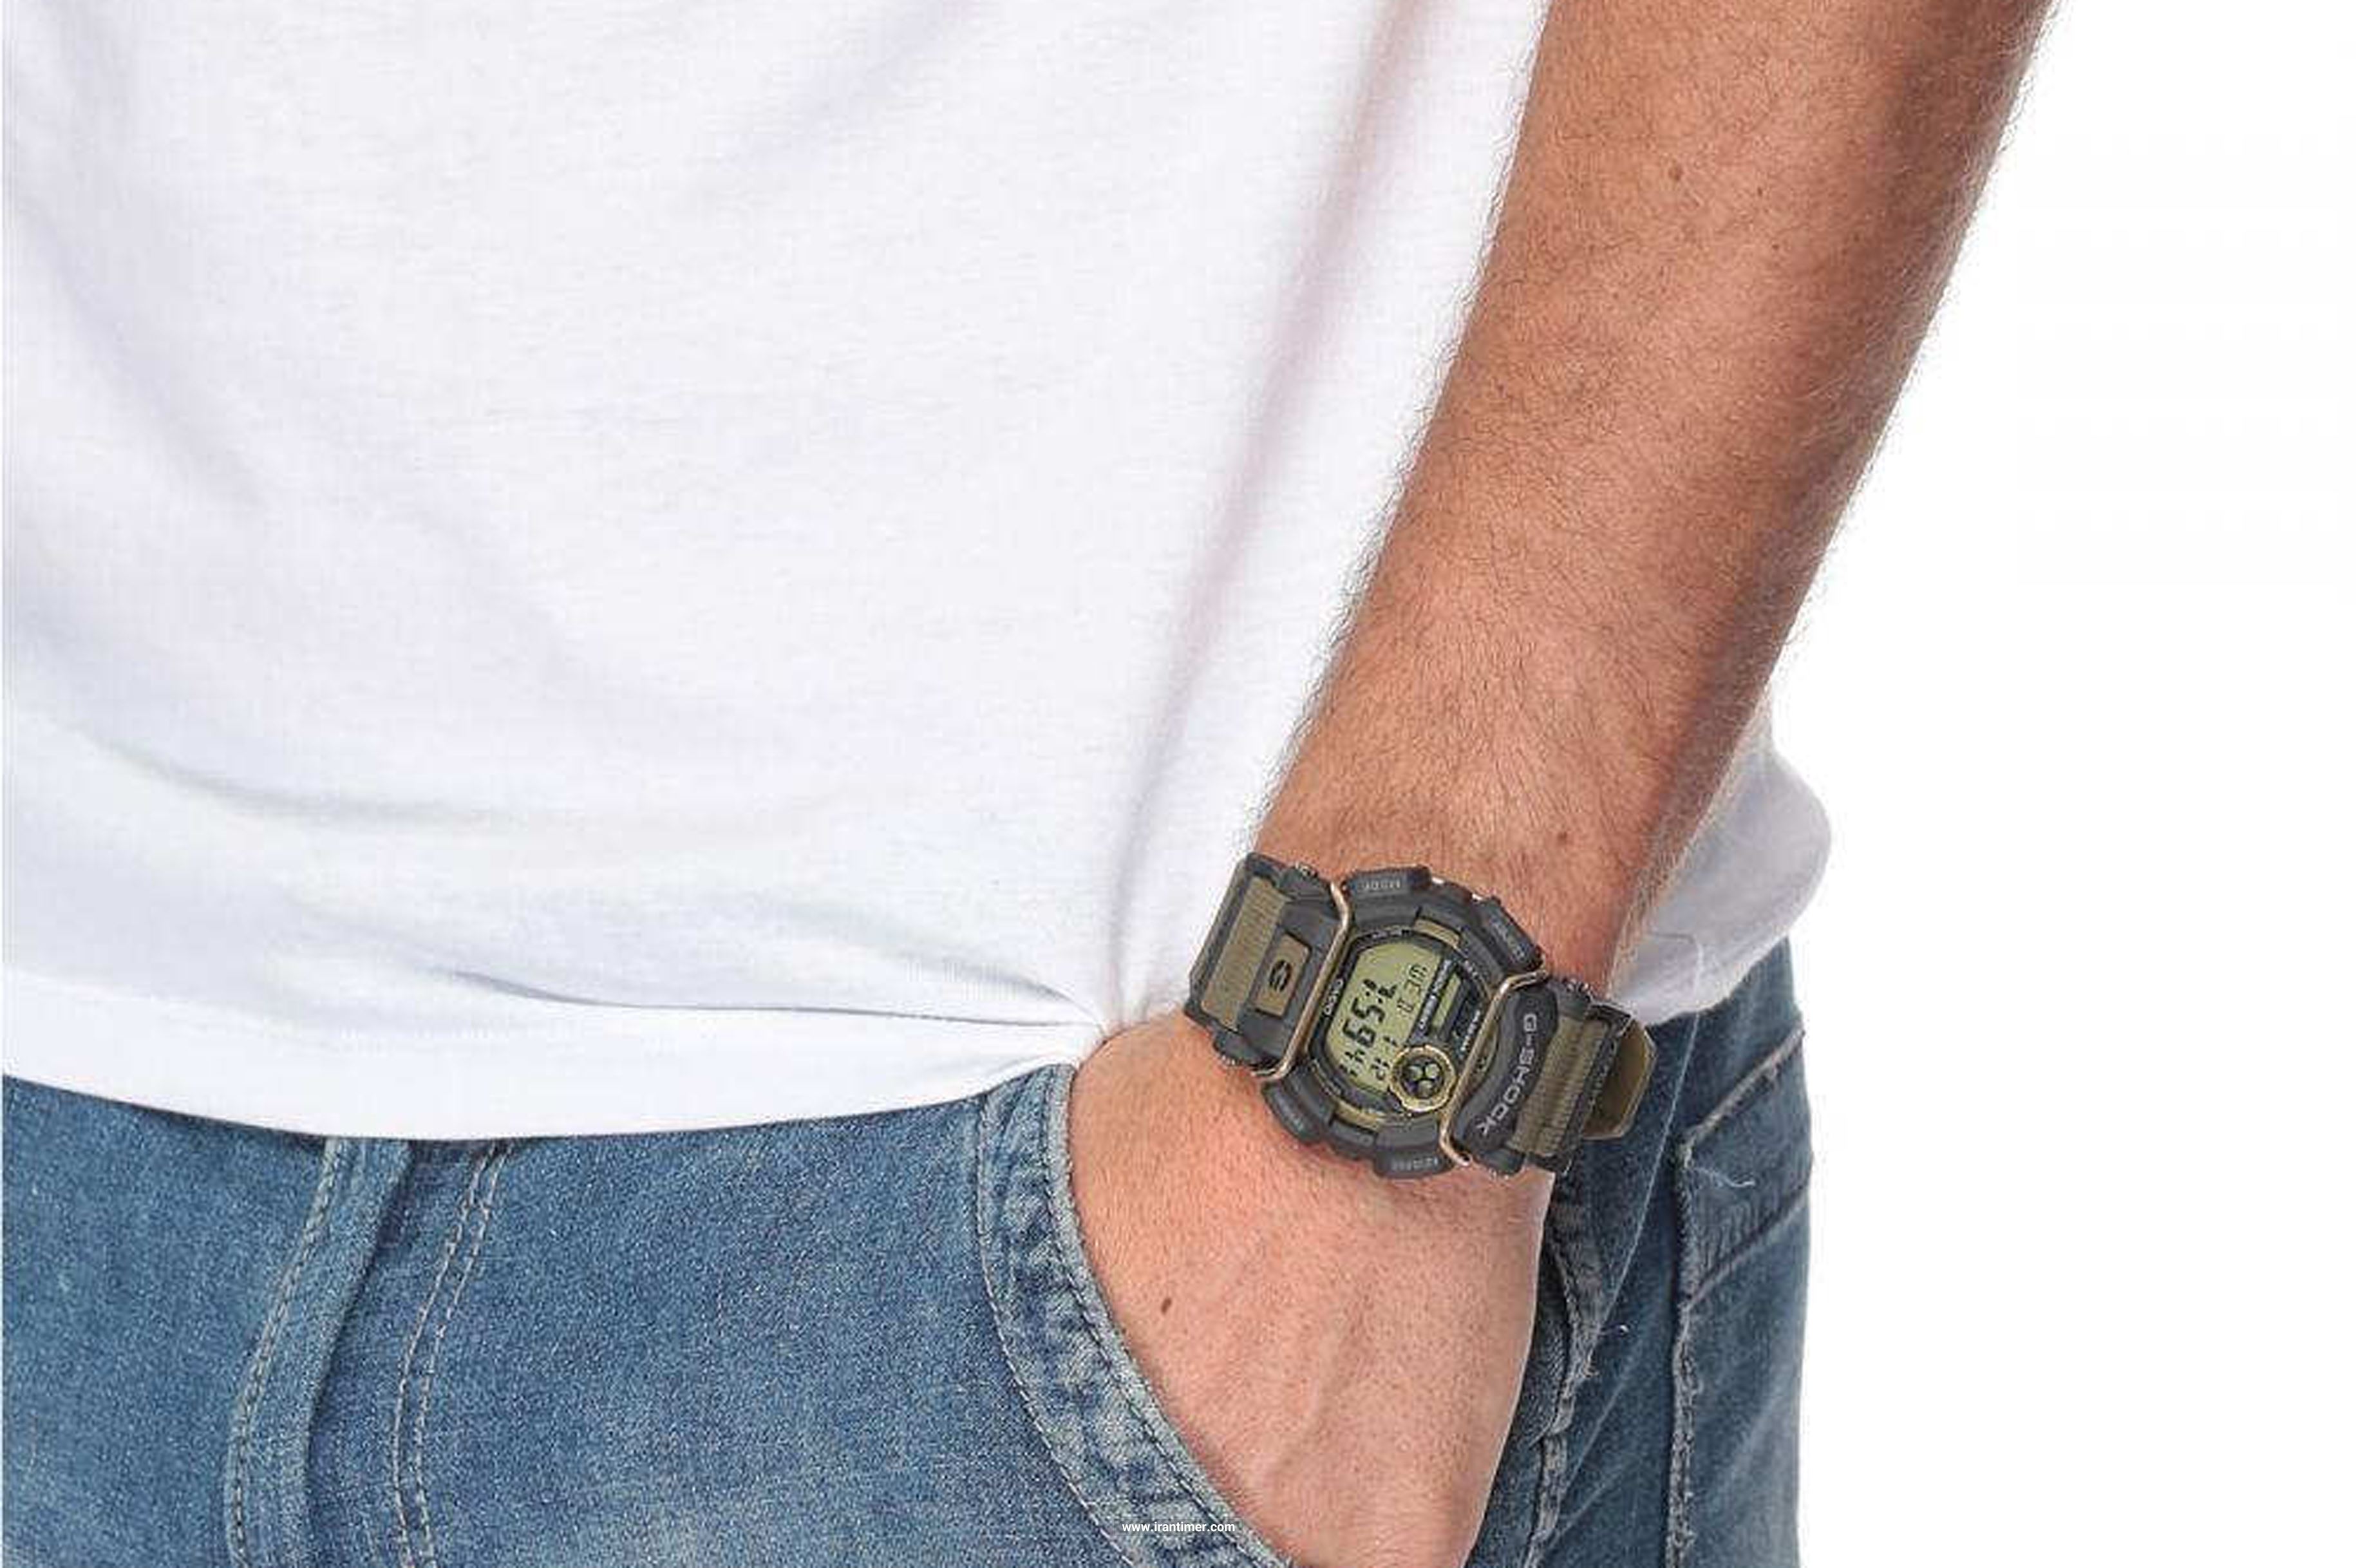 ساعت مچی مردانه کاسیو مدل GD-400-9DR یک ساعت دارای زمان سنج (Stopwatch) بهره مند از طراحی صفحه منحصر به فرد